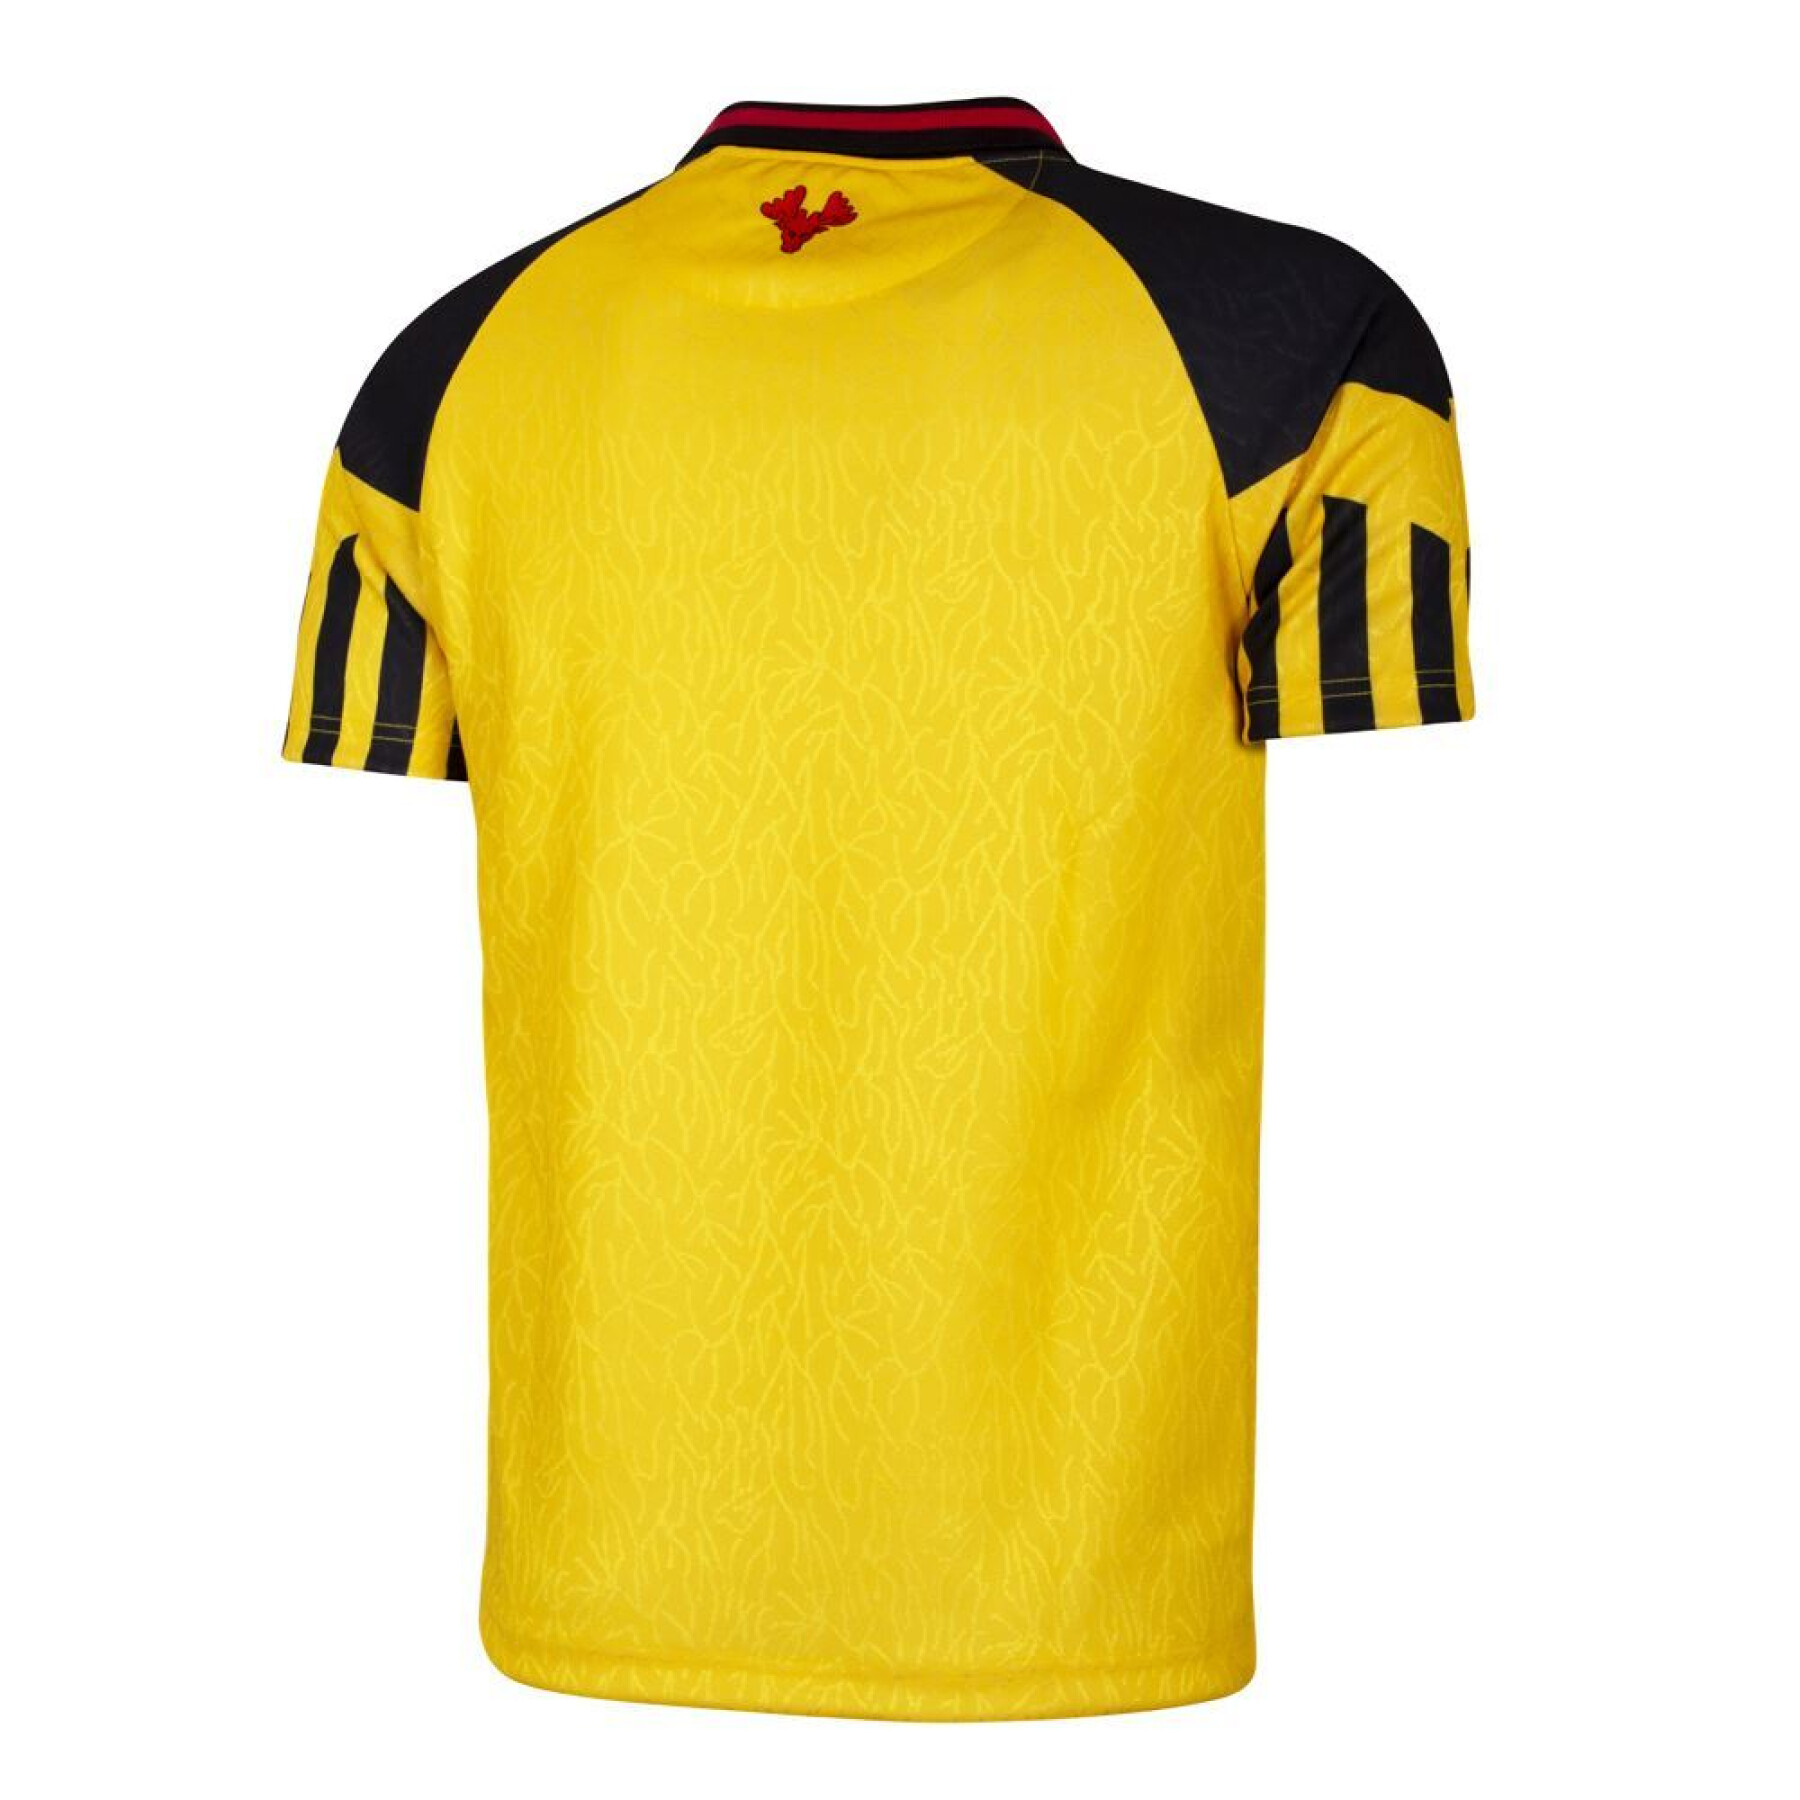 Watford-shirt 1994/95 